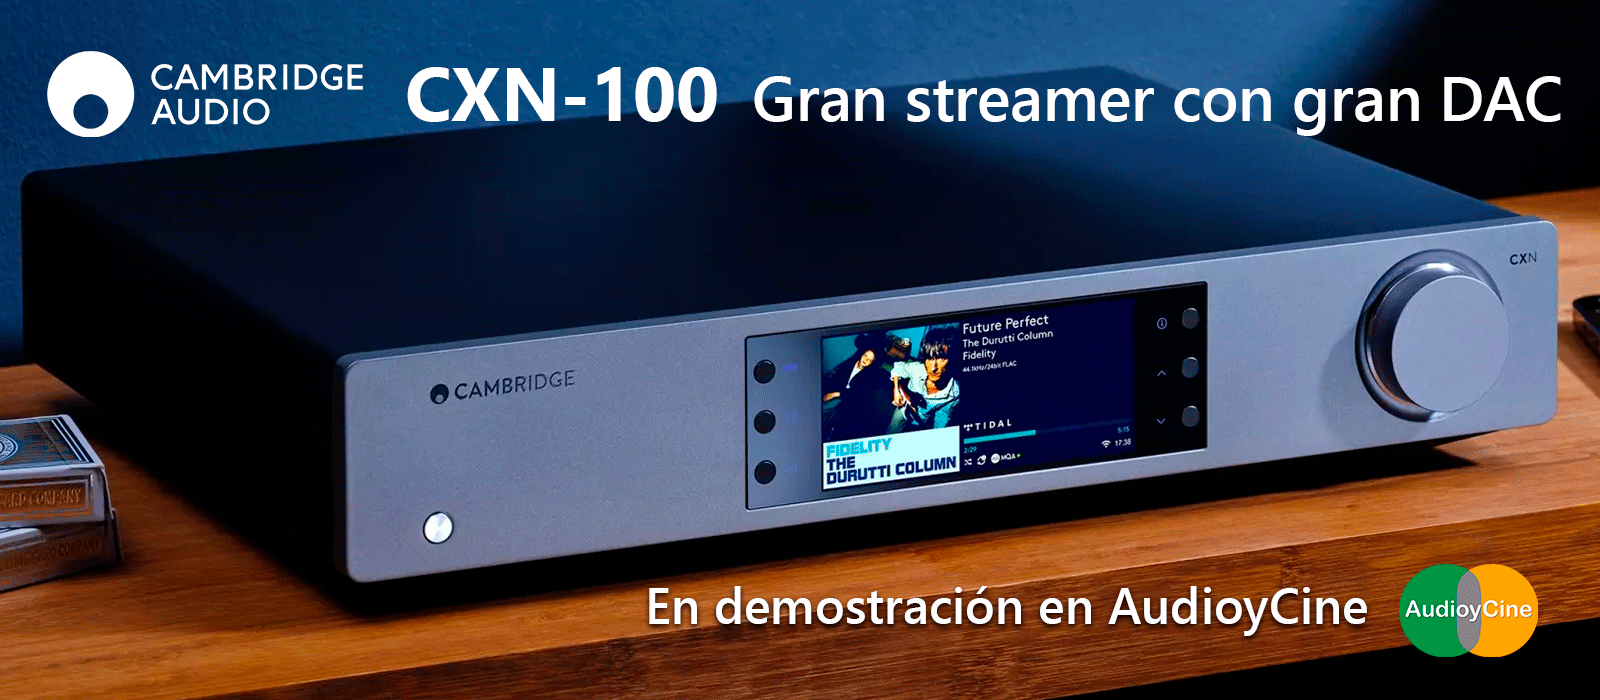 streamer-dac-Cambridge-CXN-100-gran-streamer